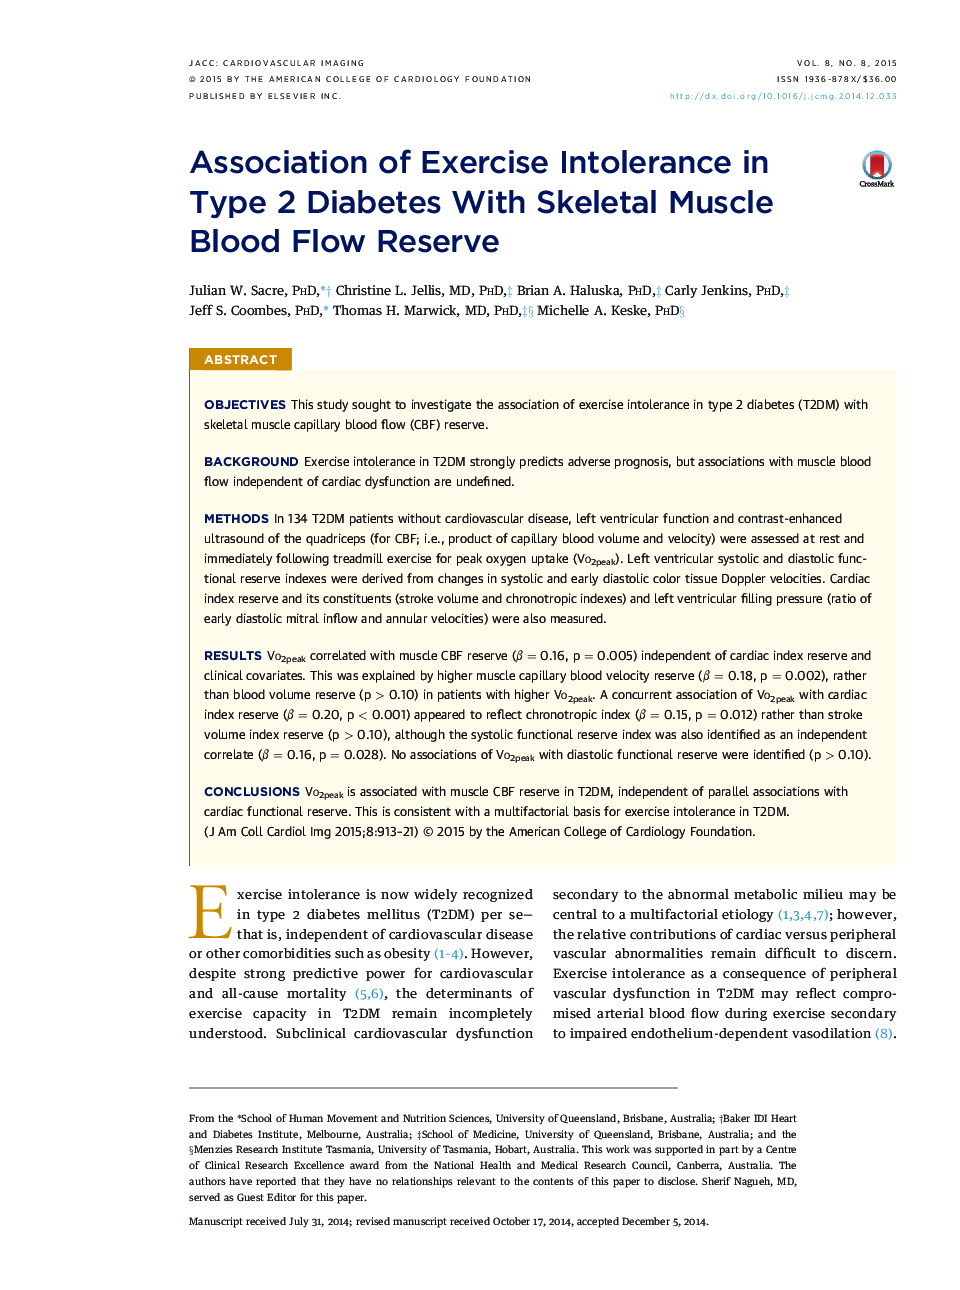 انجمن ناتوانی ورزش در دیابت نوع 2 با استفاده از رگهای جریان خون عضلانی اسکلتی 